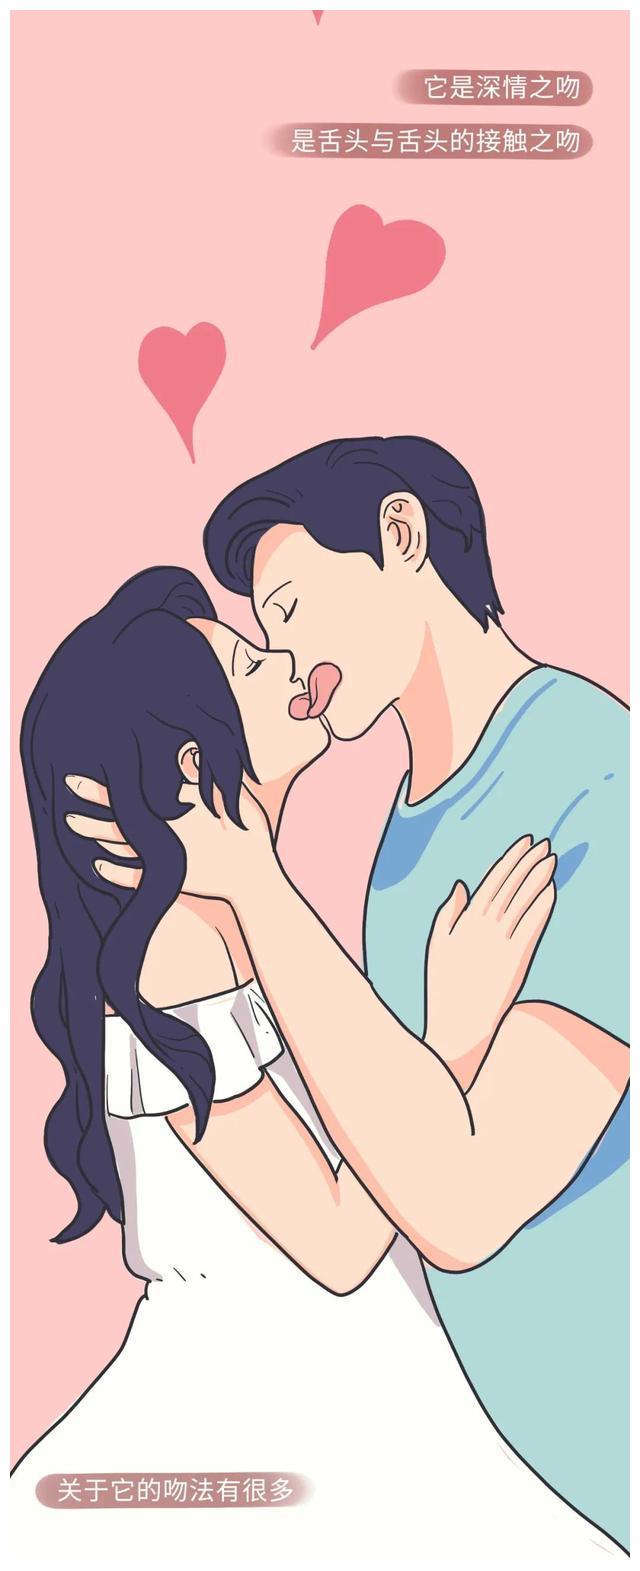 关于情侣接吻的正确姿势漫画